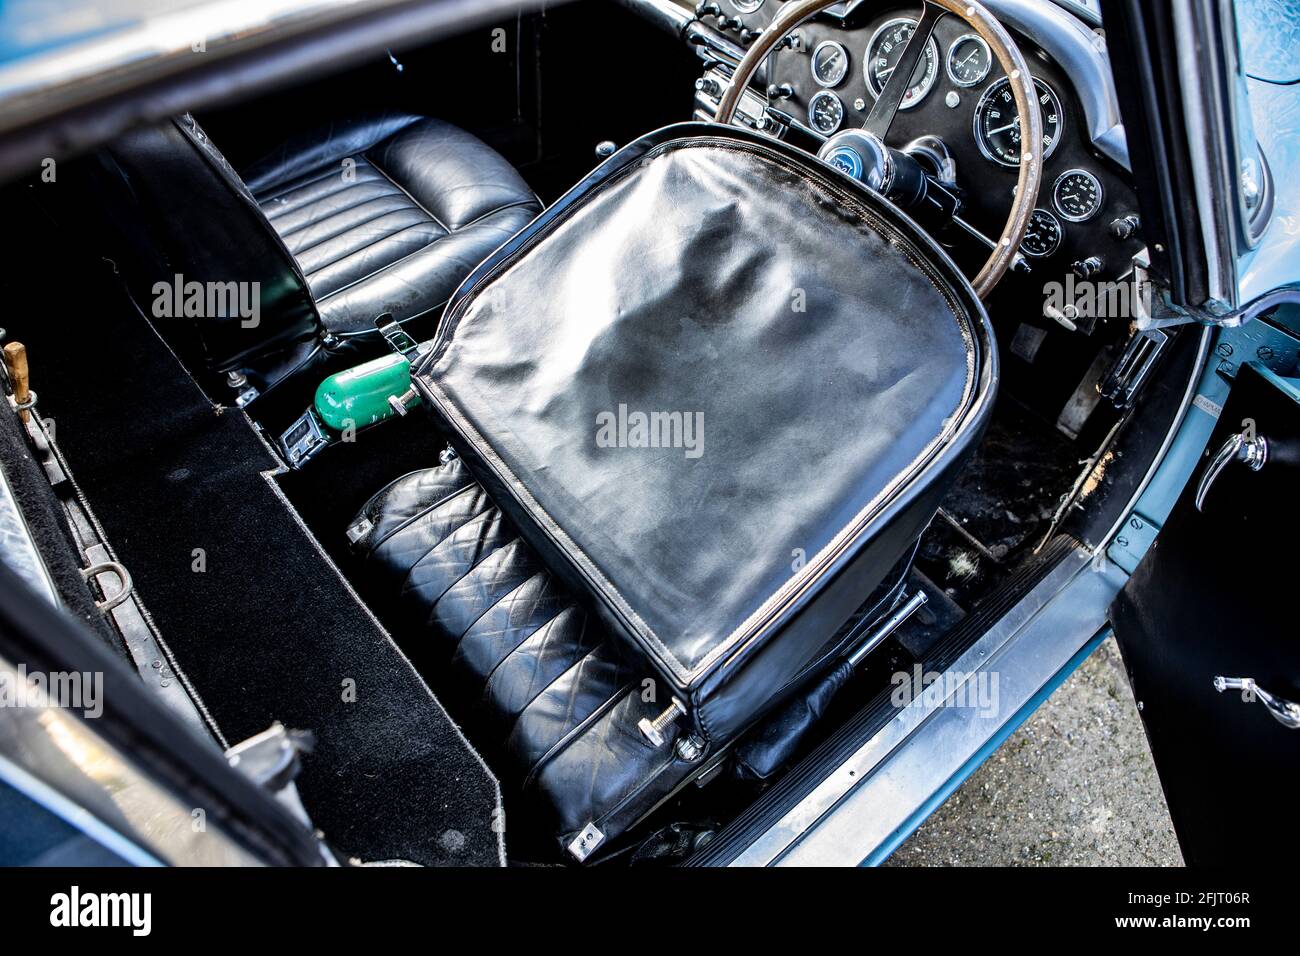 1961 Aston Martin DB4 GT SWB intérieur léger avec siège rabattu vers l'avant Banque D'Images